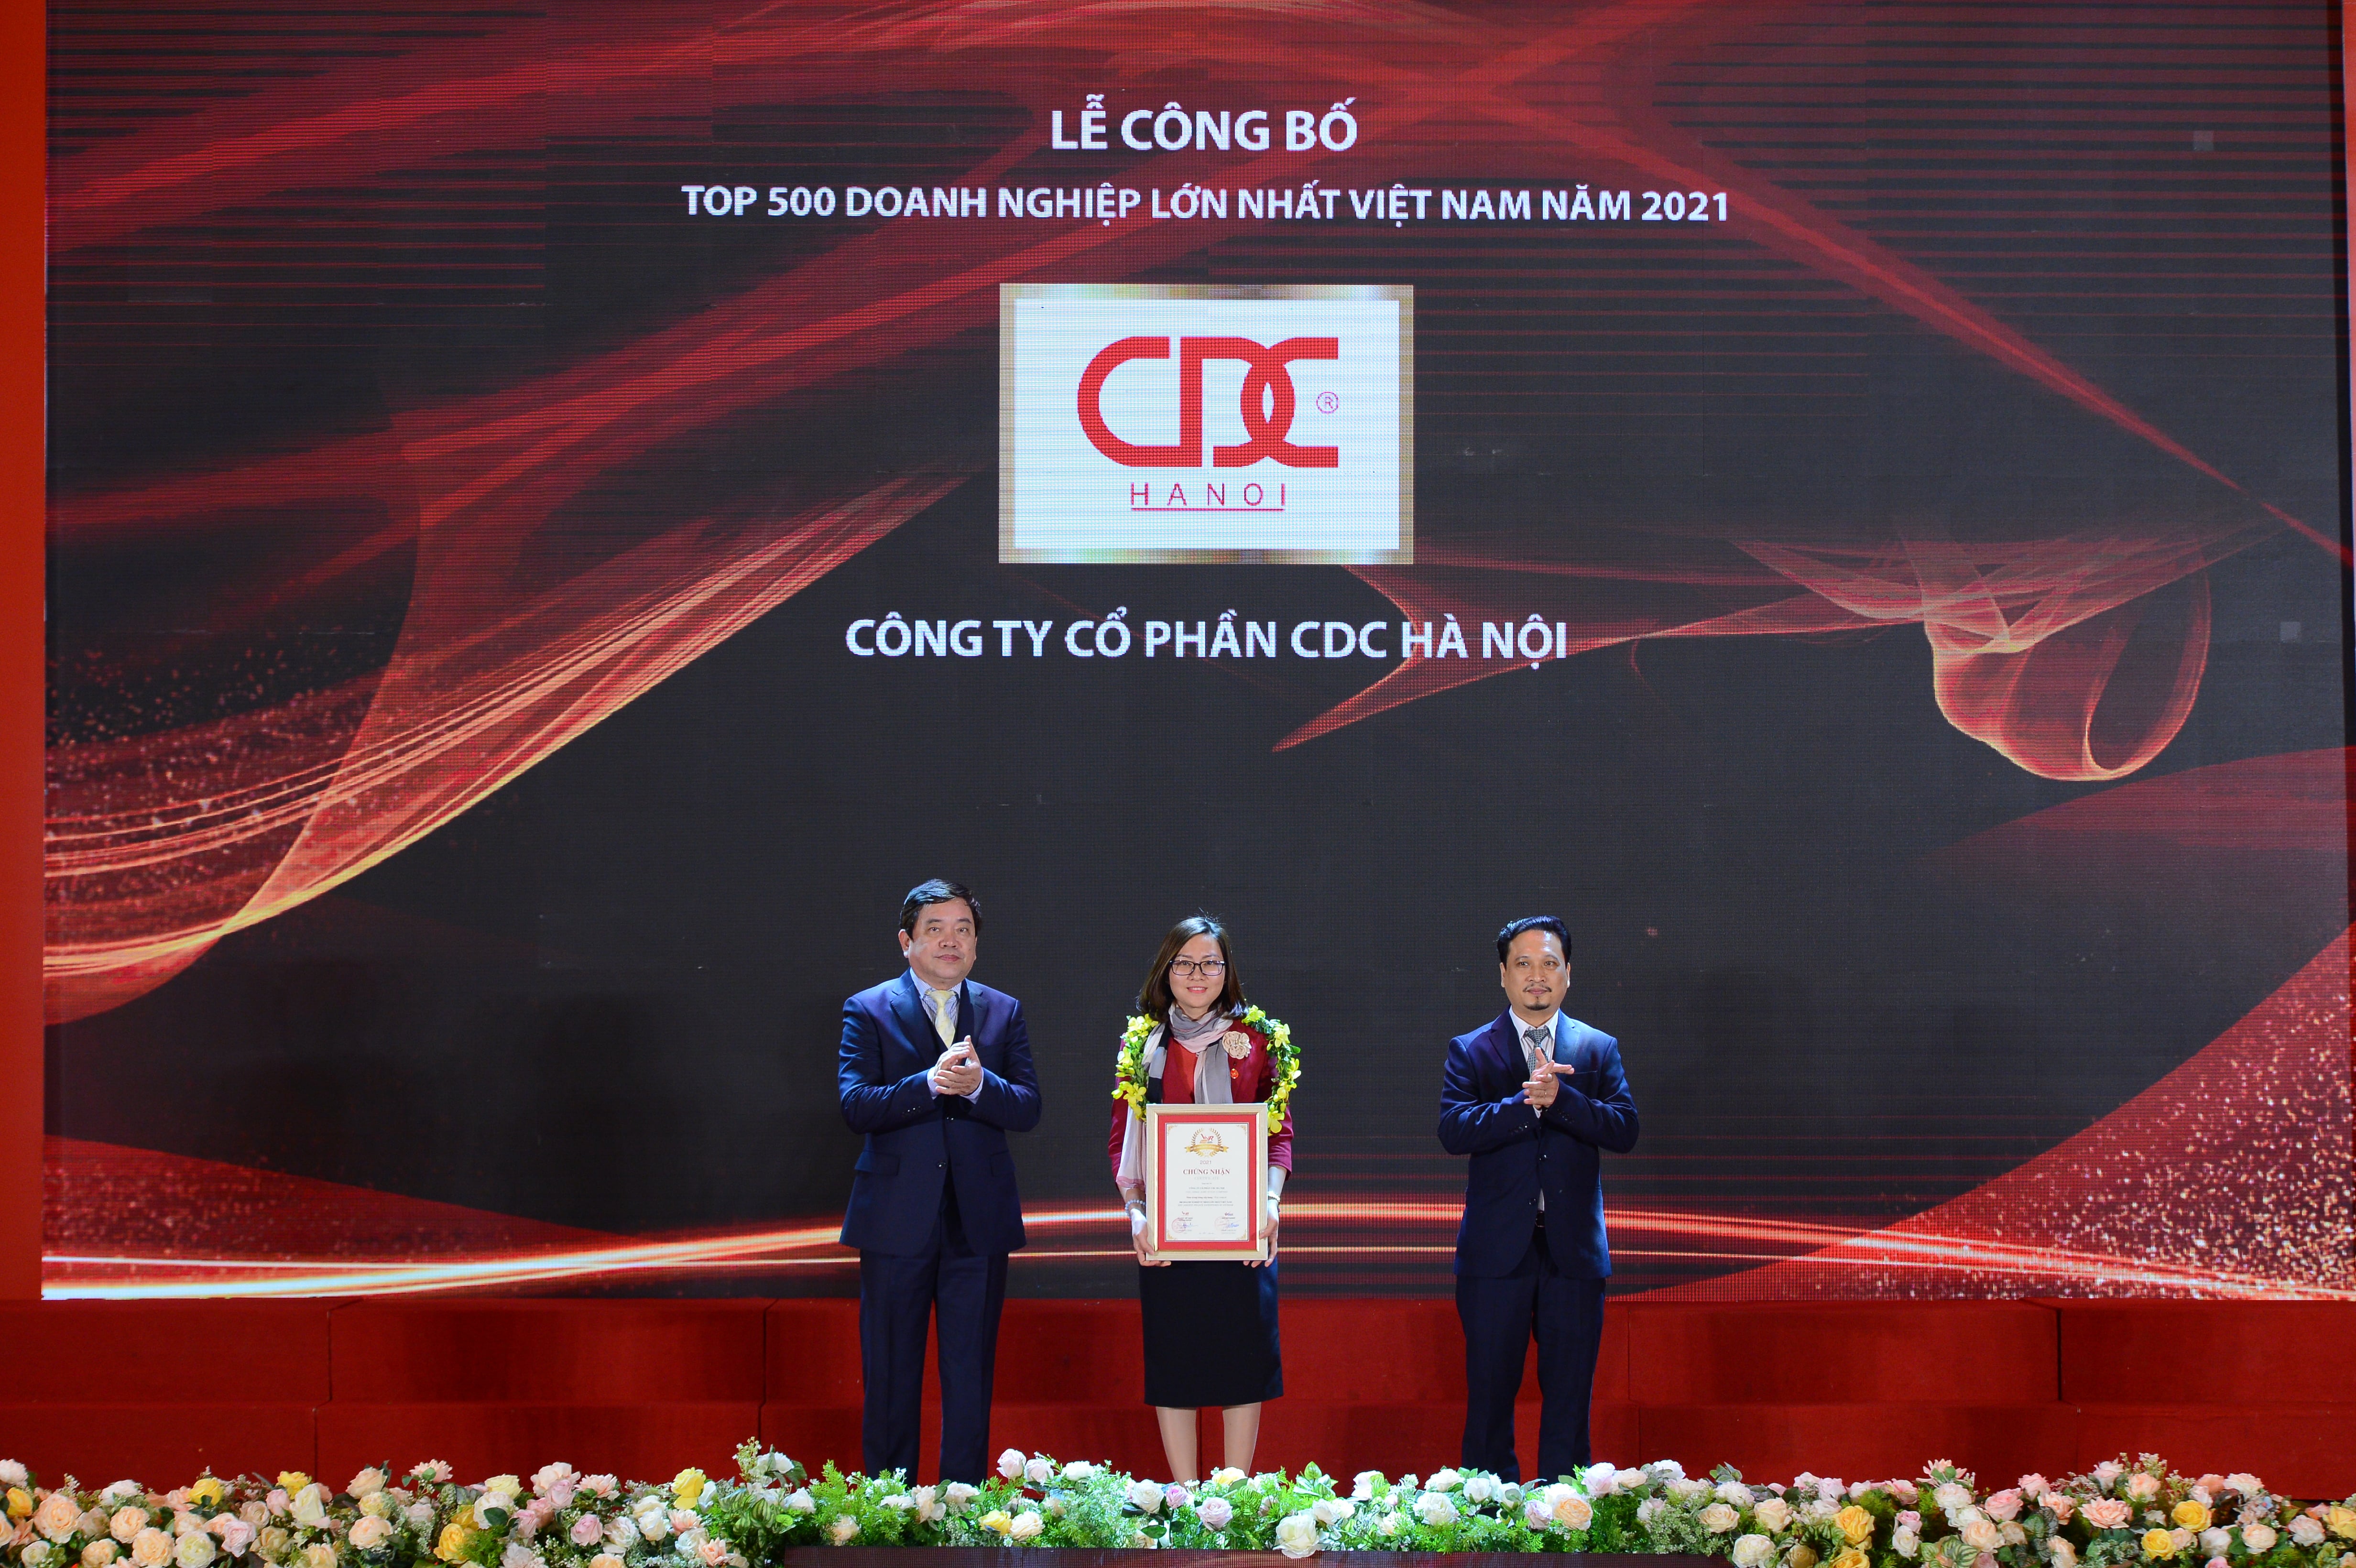 CDC Hà Nội lần thứ 2 liên tiếp lọt top 500 Doanh nghiệp lớn nhất Việt Nam